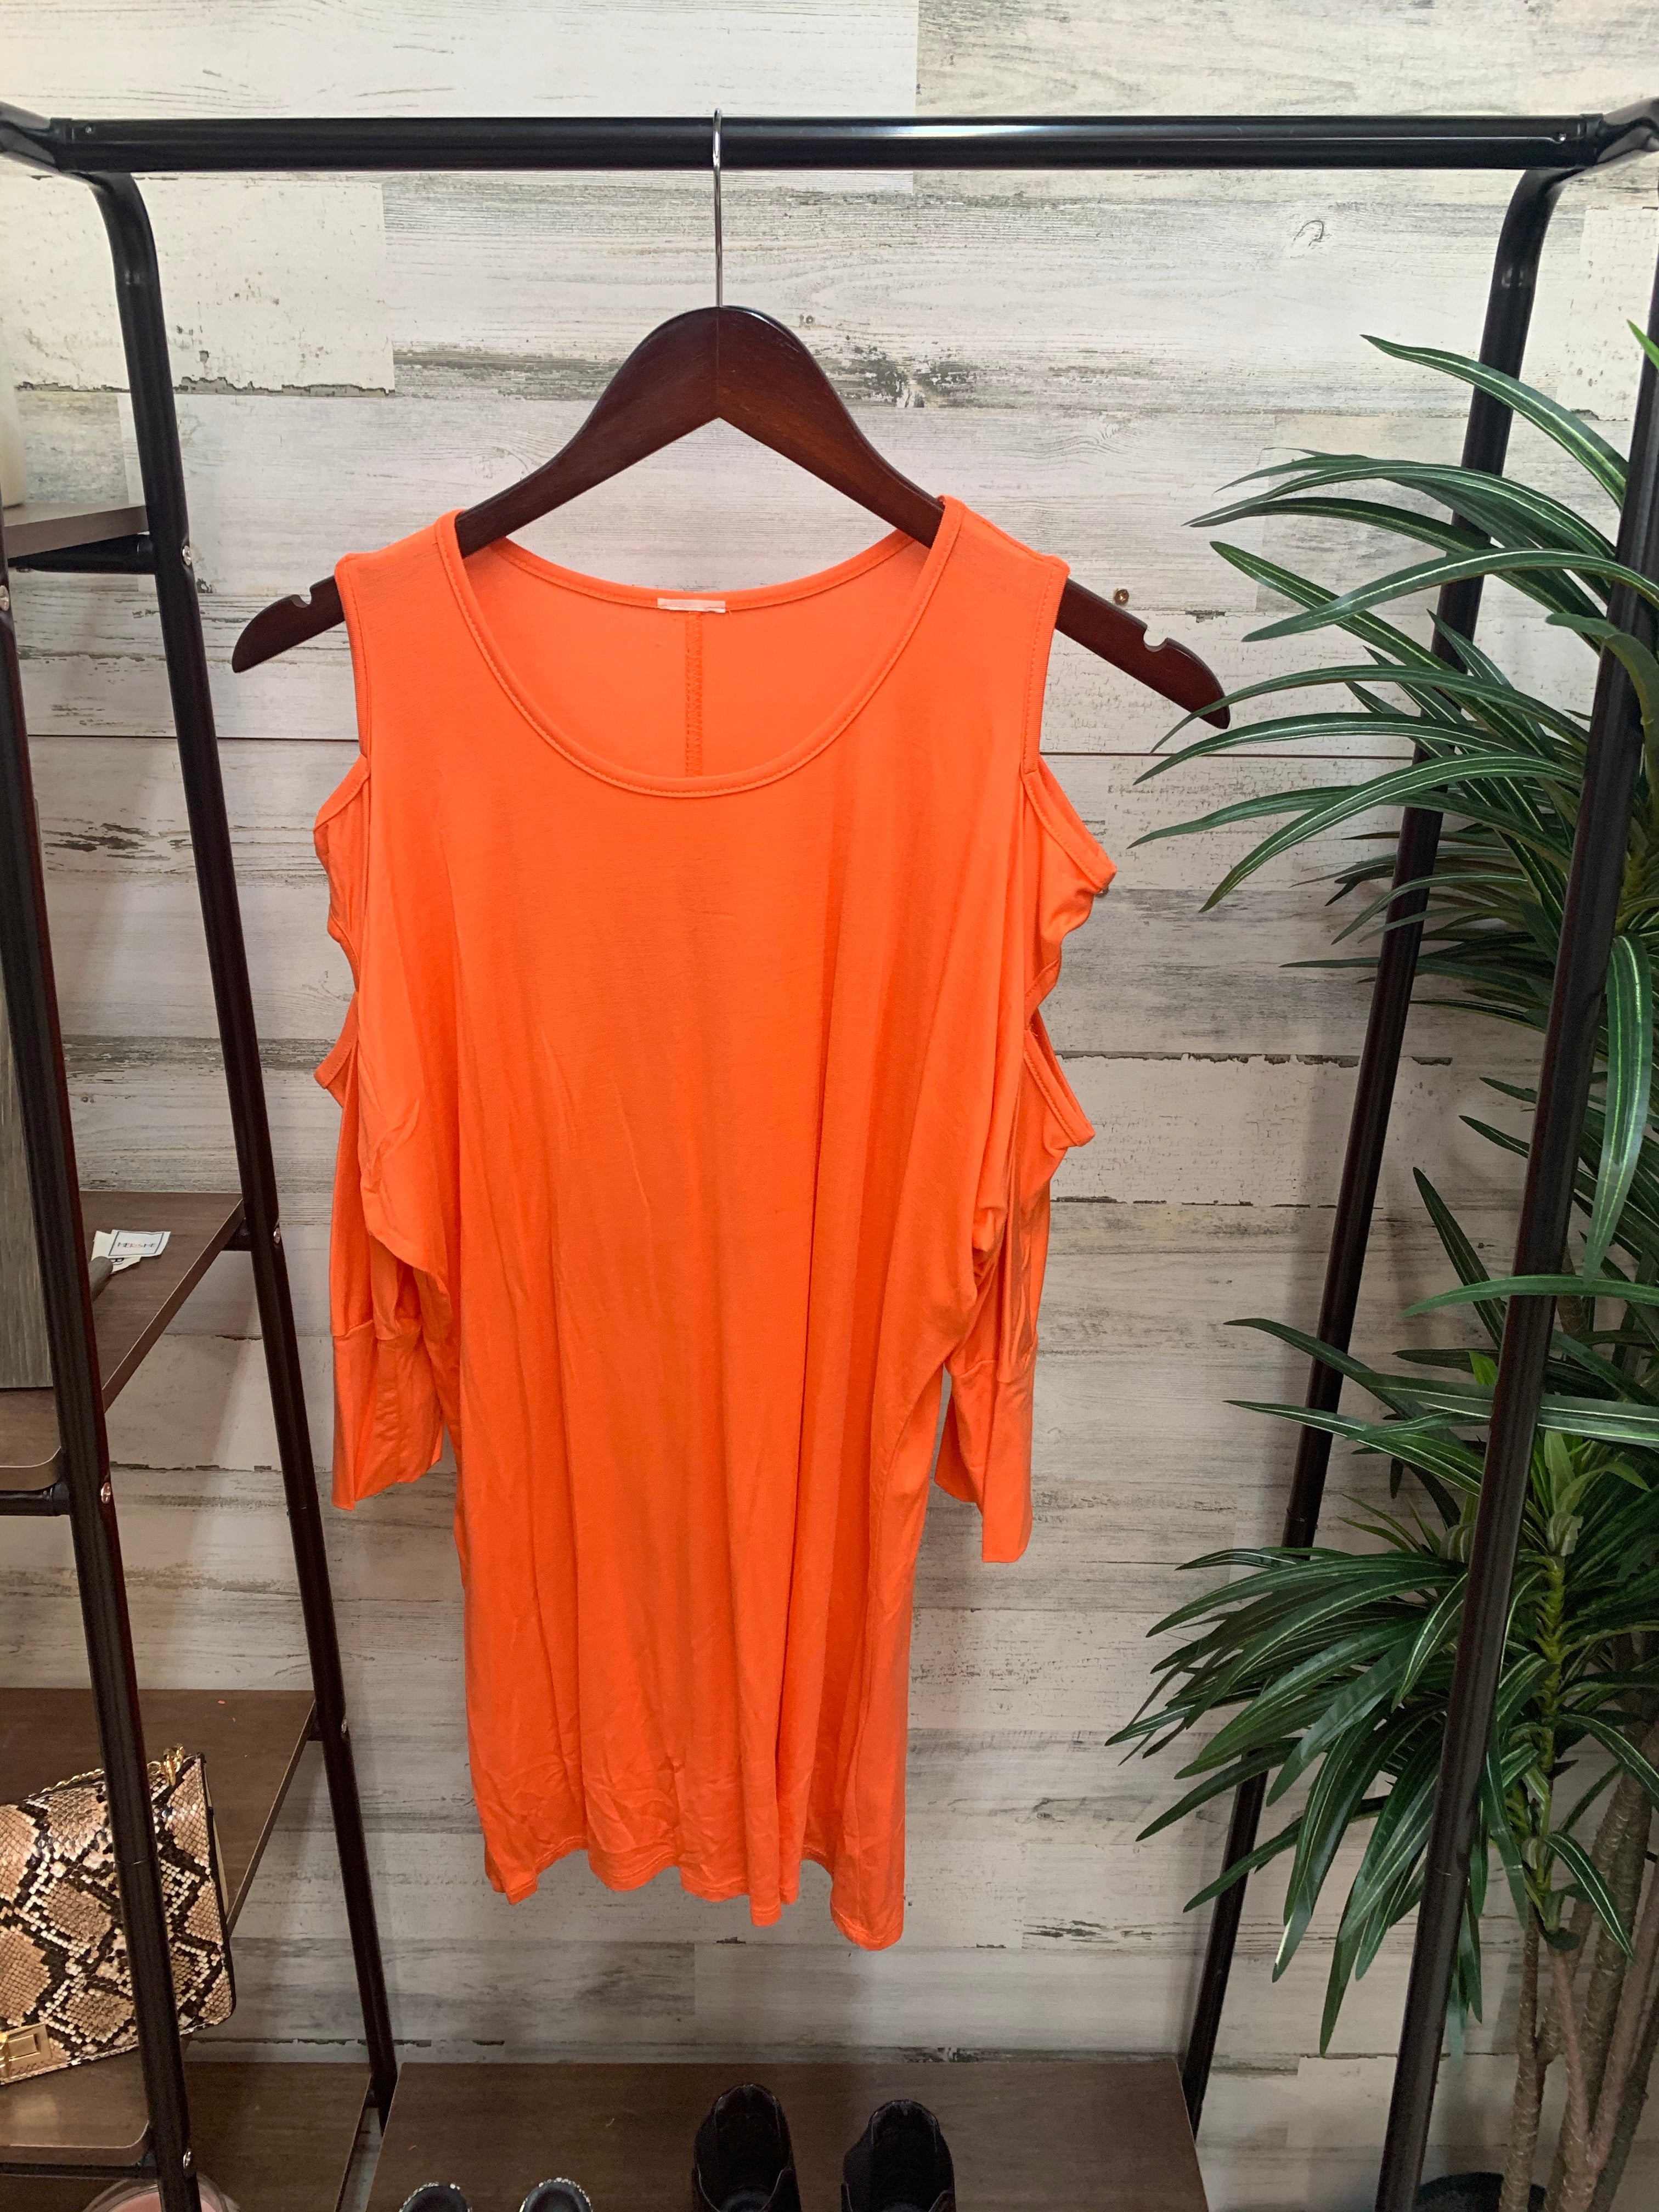 Cold Shoulder 3/4 Sleeve Top in Orange - Giddy Up Glamour Boutique